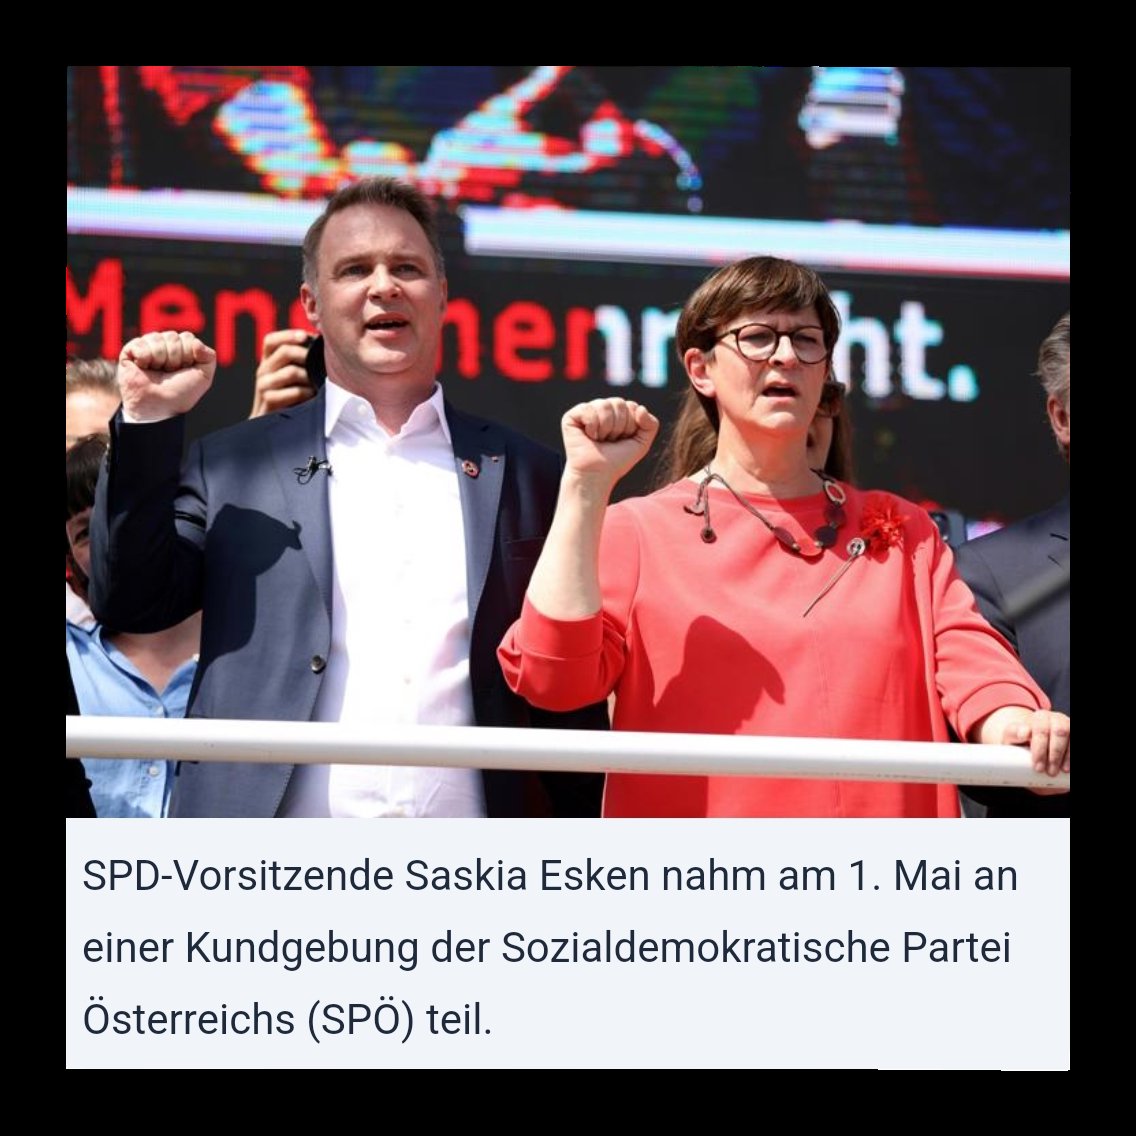 Staatsschutz leitet nach Goebbels-AfD Vergleich von SPD-Chefin Saskia Eskens Ermittlungen ein. Gemäß des Verbotsgesetz ist die öffentliche Verharmlosung des 'nationalsozialistischen Völkermords oder andere Verbrechen gegen die Menschlichkeit' in Österreich strafbar.